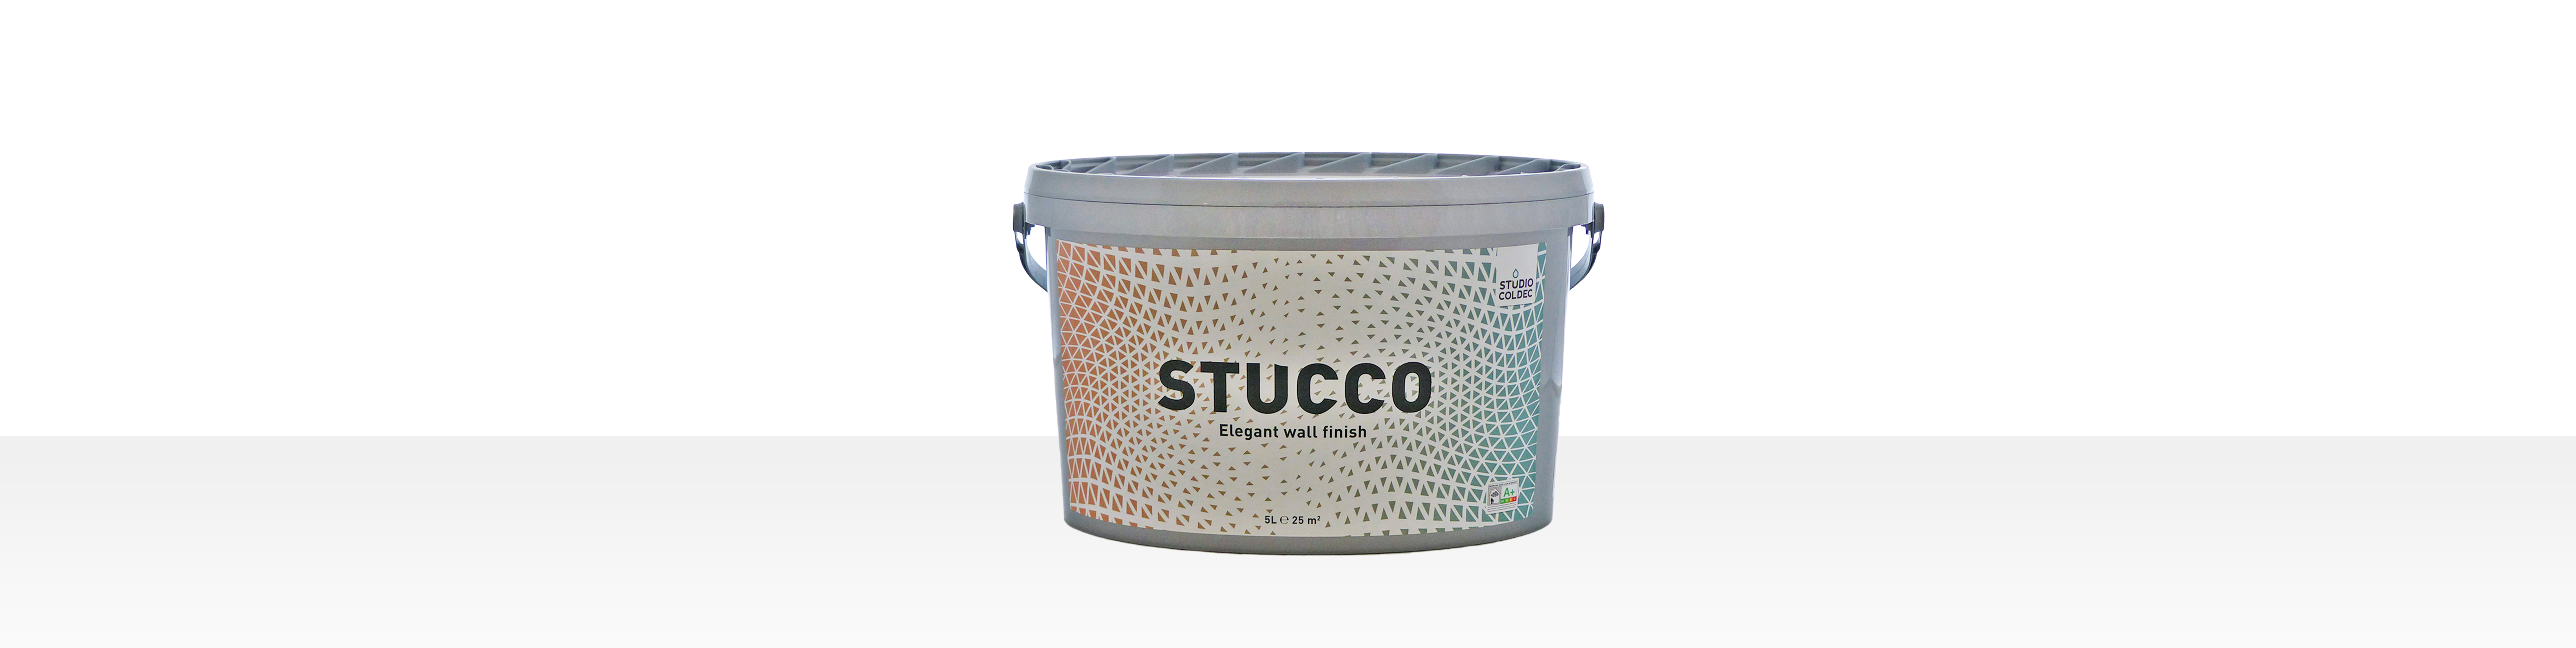 stucco-producten